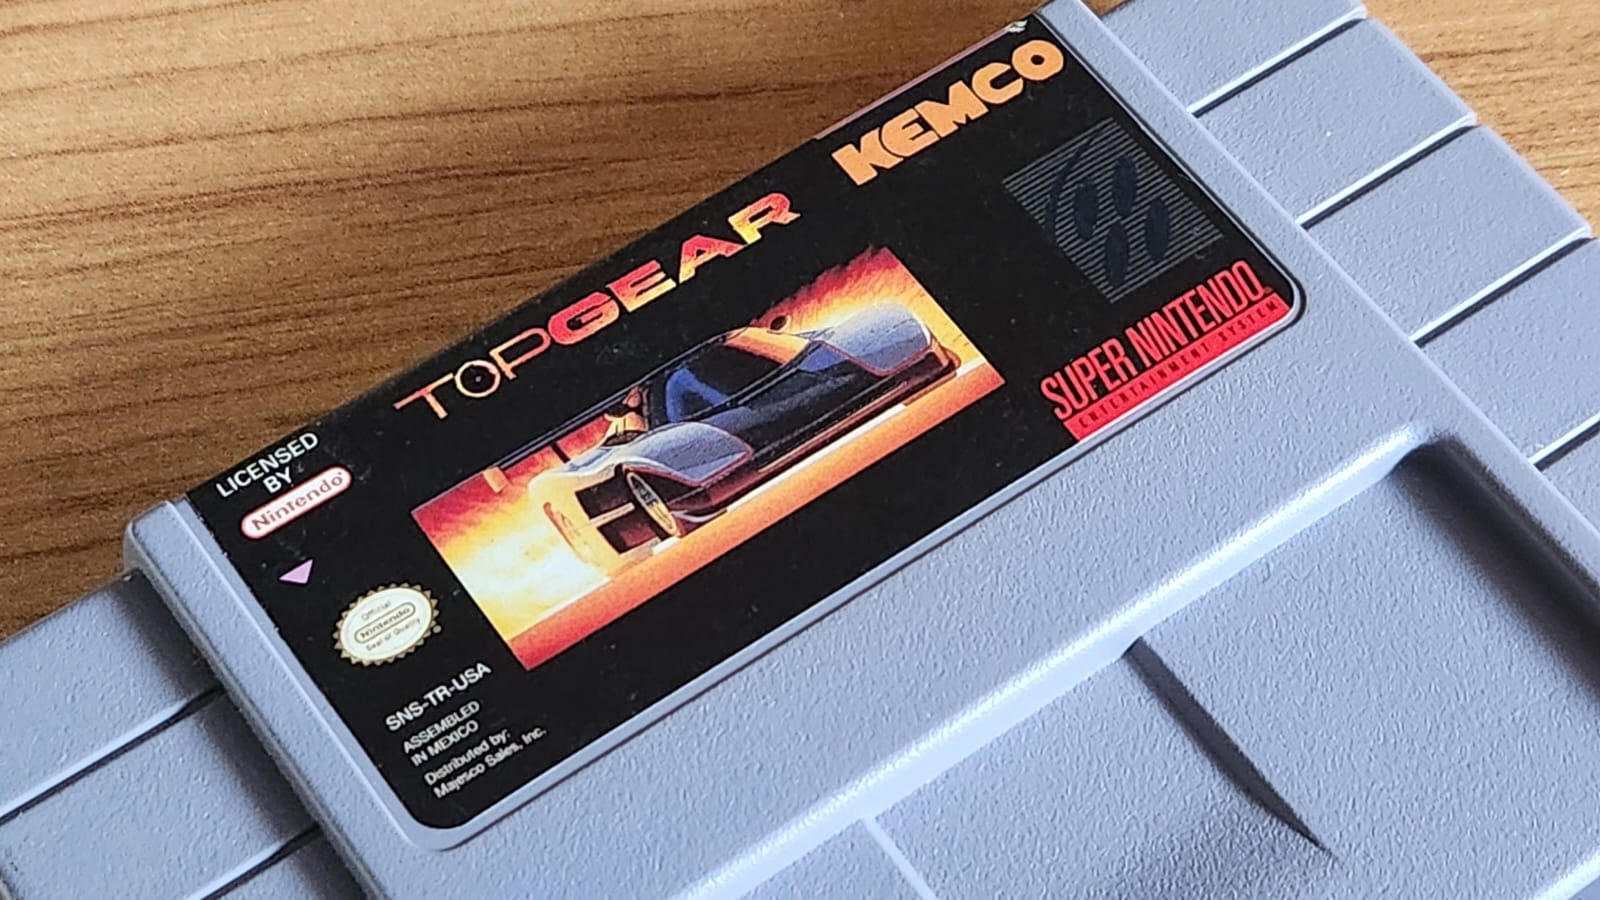 Top Gear: como game de Super NES se tornou um fenômeno no Brasil